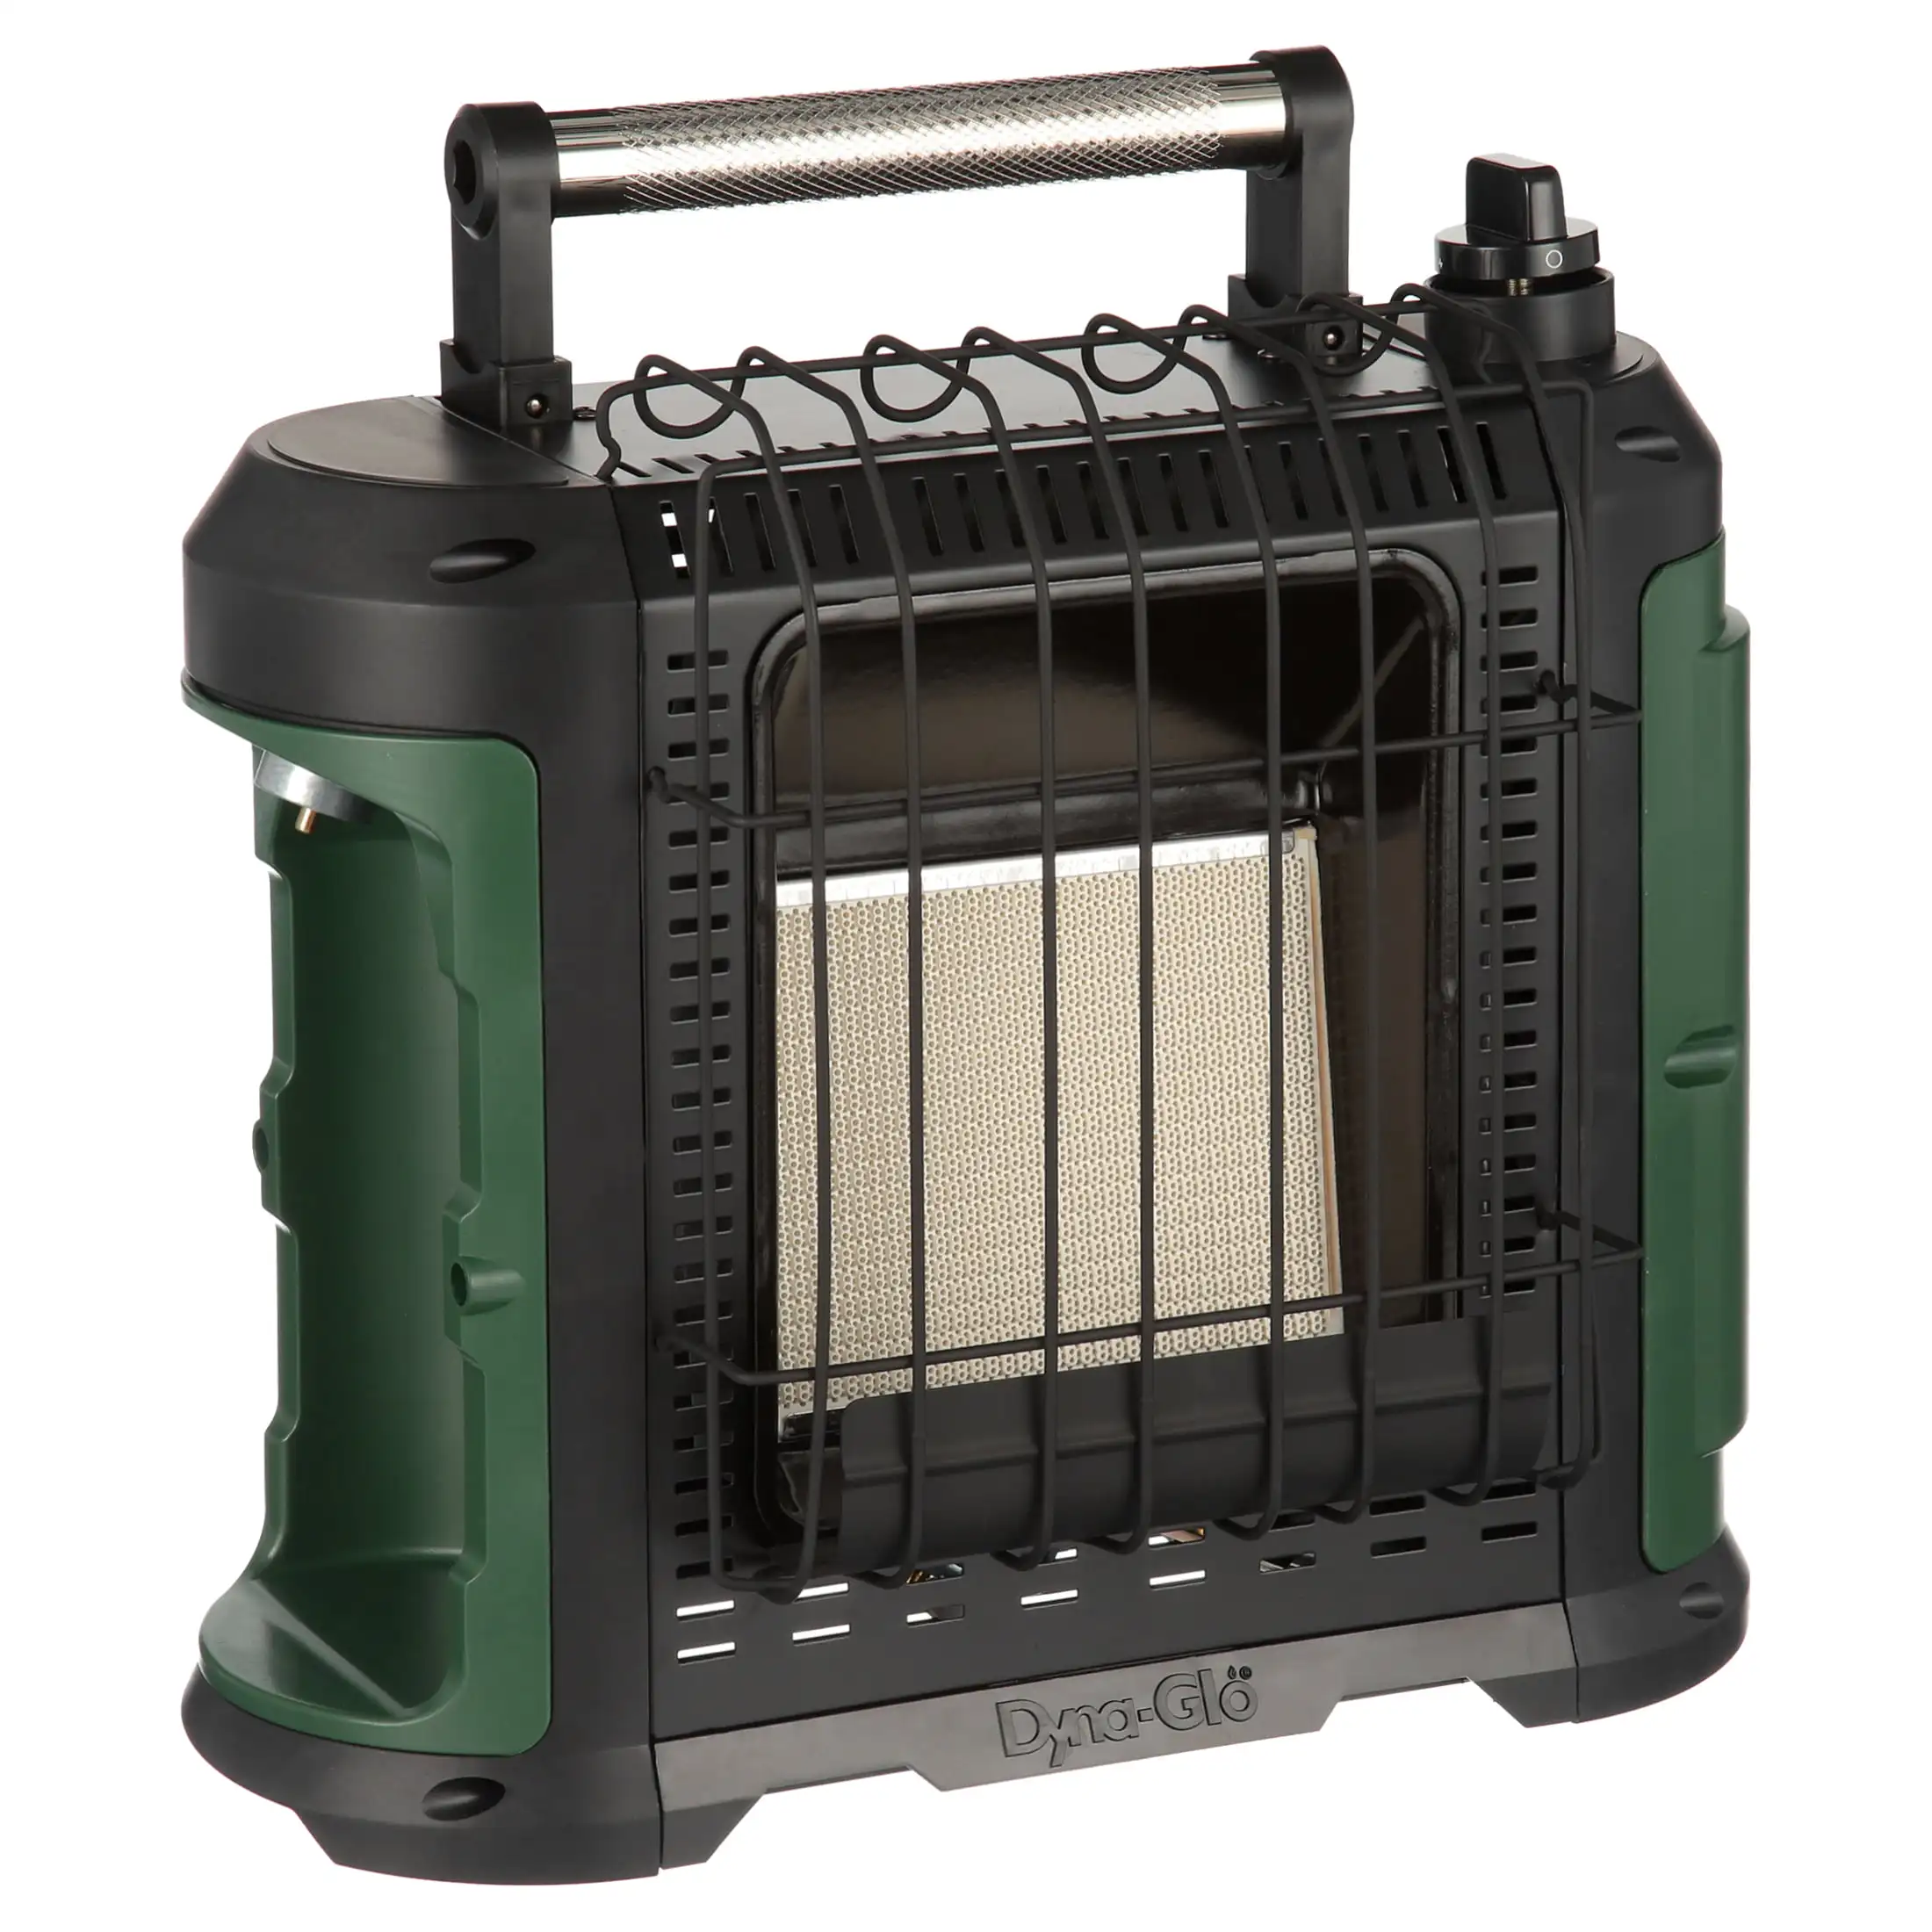 DynaGlo Grab N Go 10,000 BTU Propane Portable Heater